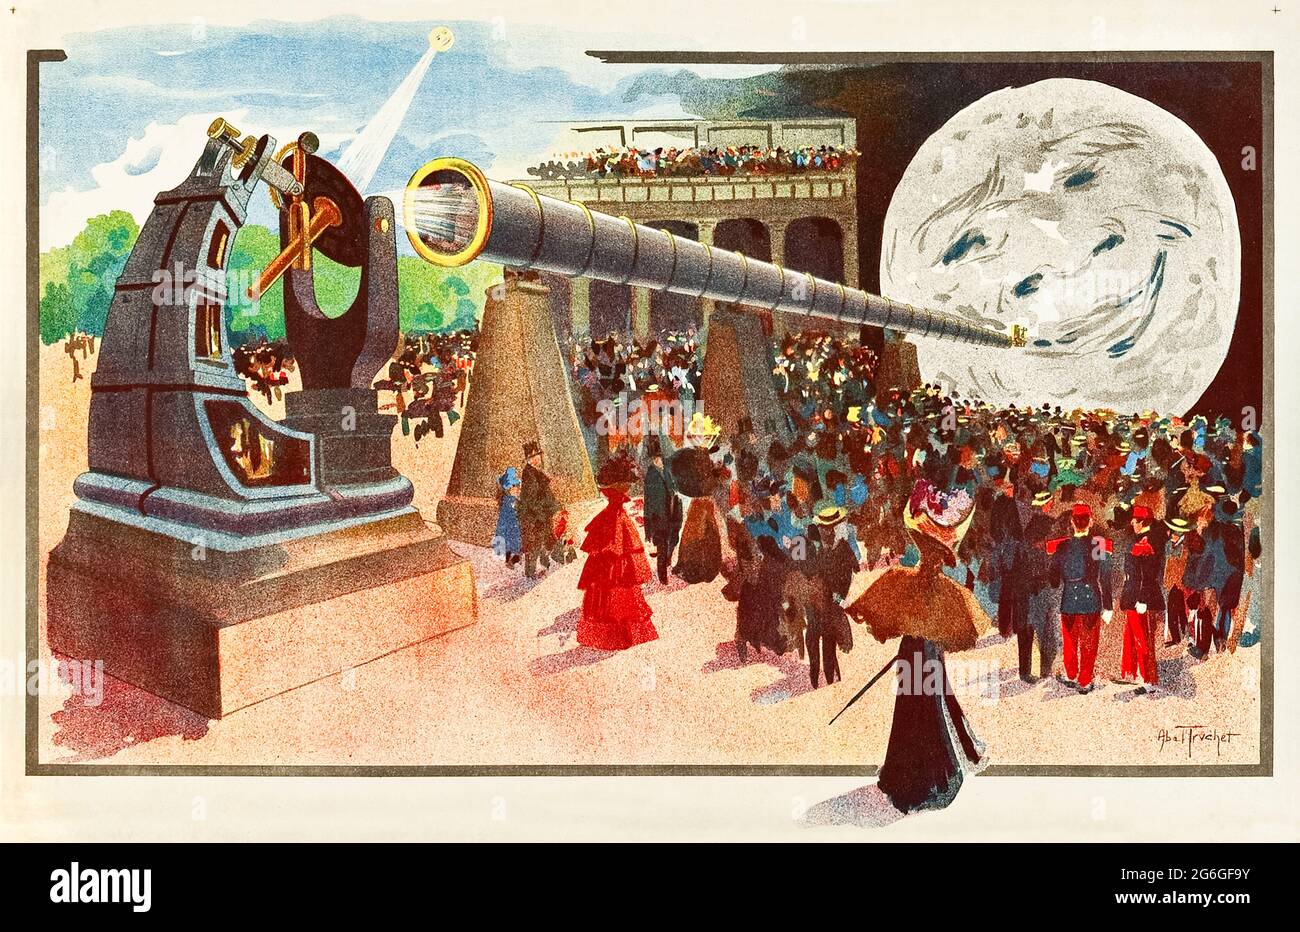 ‘La Lune à un mètre!’ (Der Mond auf einem Meter!) 1900 Plakat mit der ‘Grande Lunette’ (dem größten brechenden Teleskop der Welt), das im Palast der Optik auf der Weltausstellung 1900 in Paris installiert wurde, mit dem Mondbild mit einem Gesicht, das auf eine Leinwand projiziert wurde, die von Georges Méliès’ gleichnaliger Film aus dem Jahr 1898 inspiriert wurde. Kunstwerke von Louis Abel-Truchet (1857-1918). Kredit: Privatsammlung / AF Fotografie Stockfoto